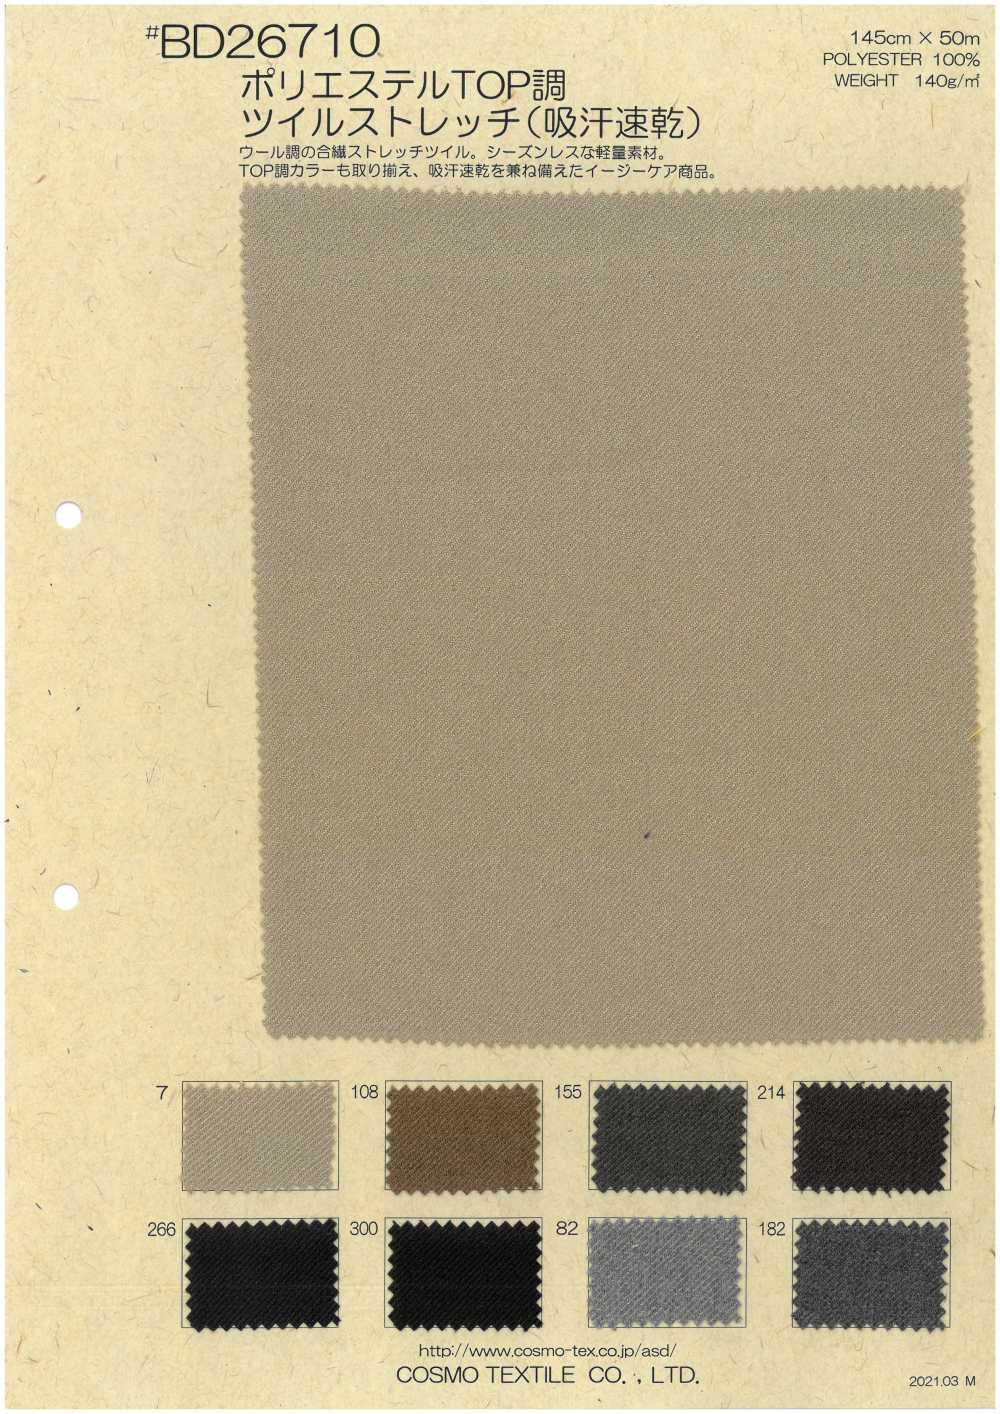 BD26710 [OUTLET] Polyester TOP Phong Cách Co Giãn Chéo[Vải] COSMO TEXTILE